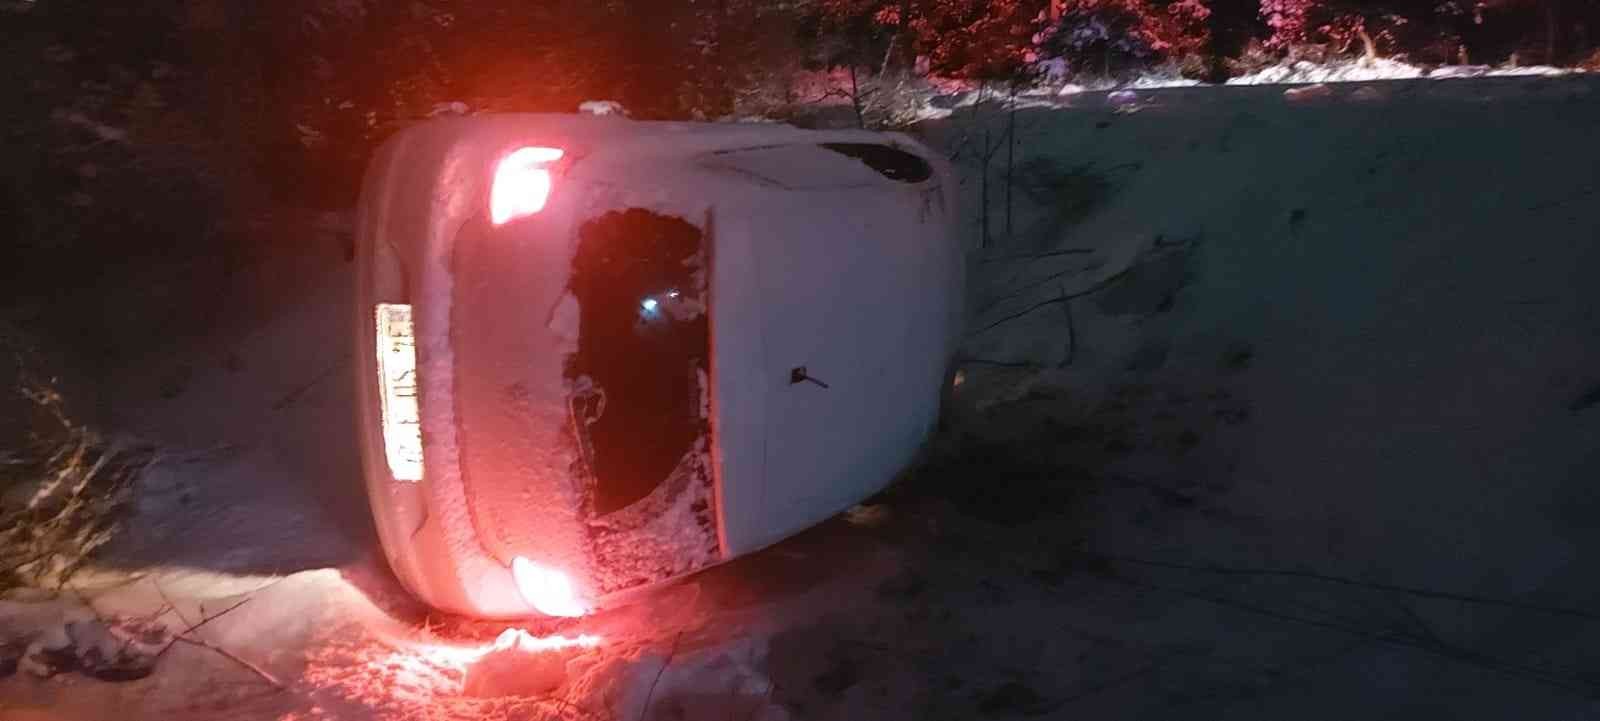 Kocaeli’nin Gebze ilçesinde kar yağışı sonrasında kayganlaşan yolda kontrolü kaybeden sürücü otomobiliyle takla attı. Kazada 4 kişi yaralandı ...